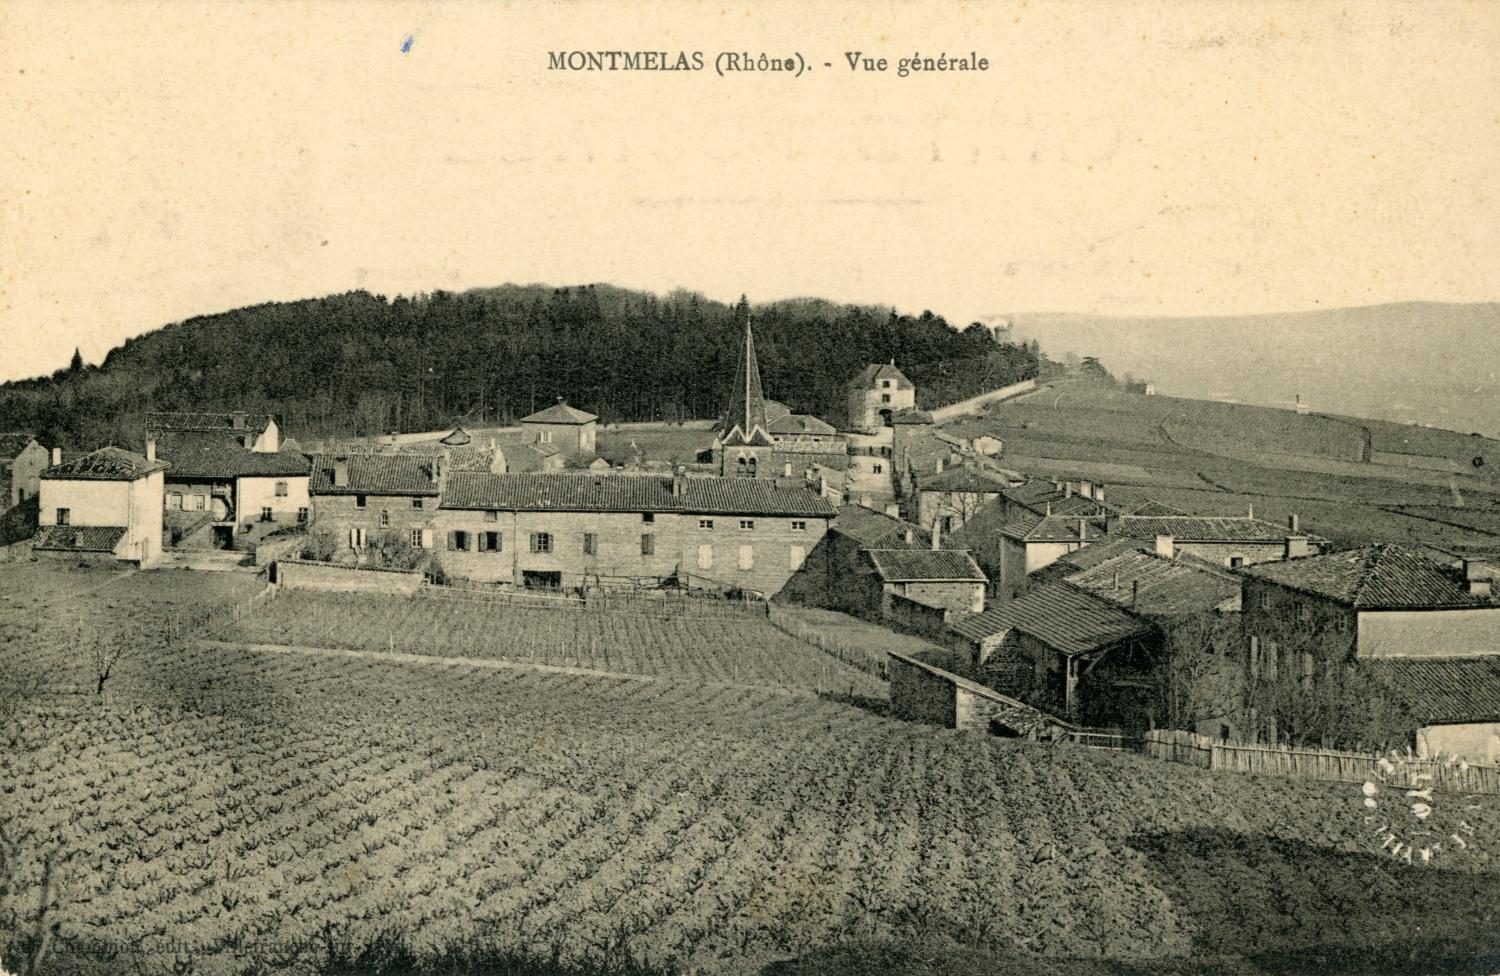 Montmelas (Rhône). - Vue générale